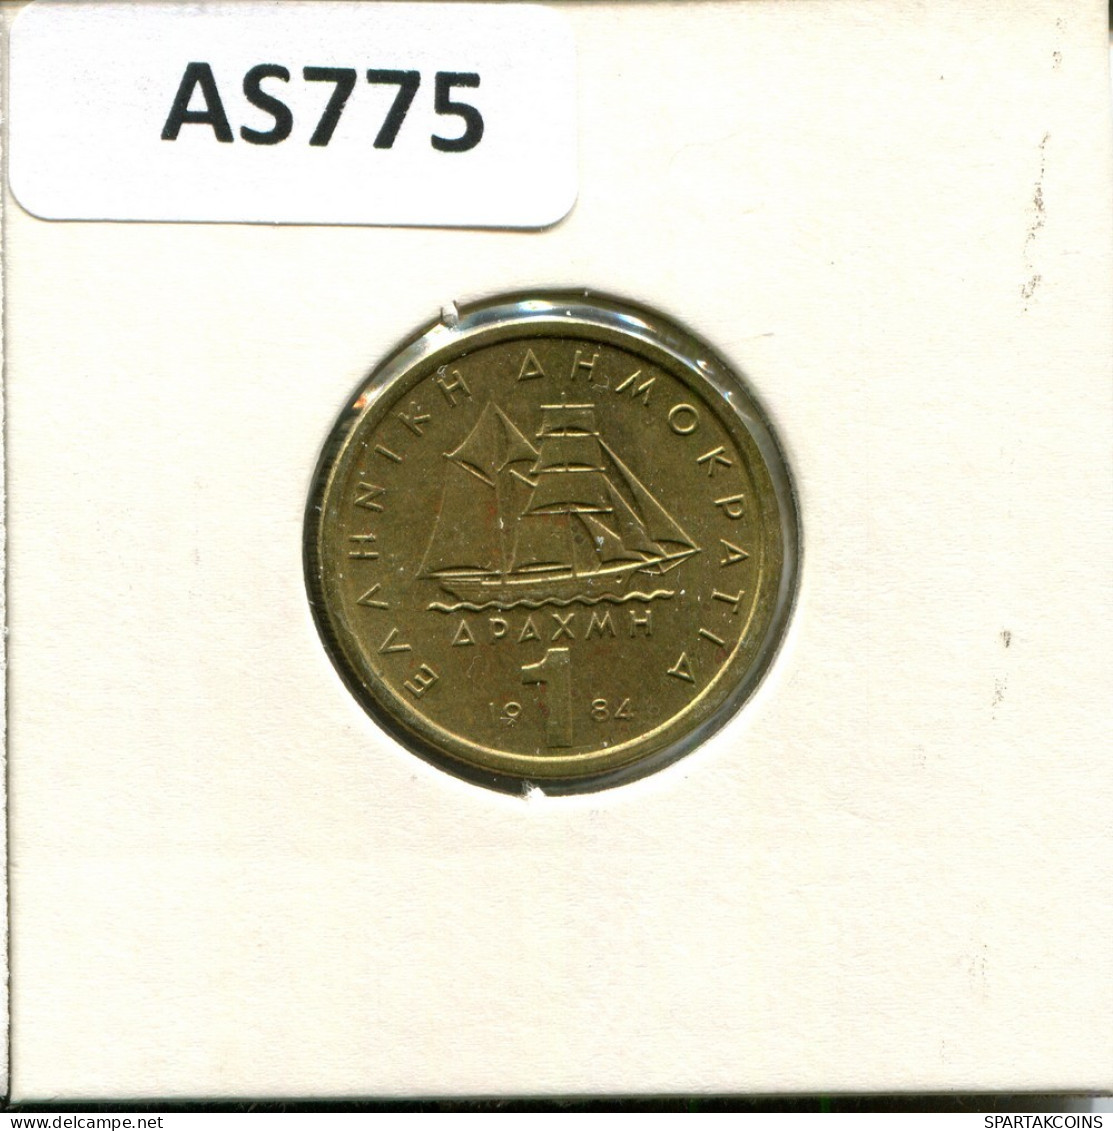 1 DRACHMA 1984 GRECIA GREECE Moneda #AS775.E.A - Greece